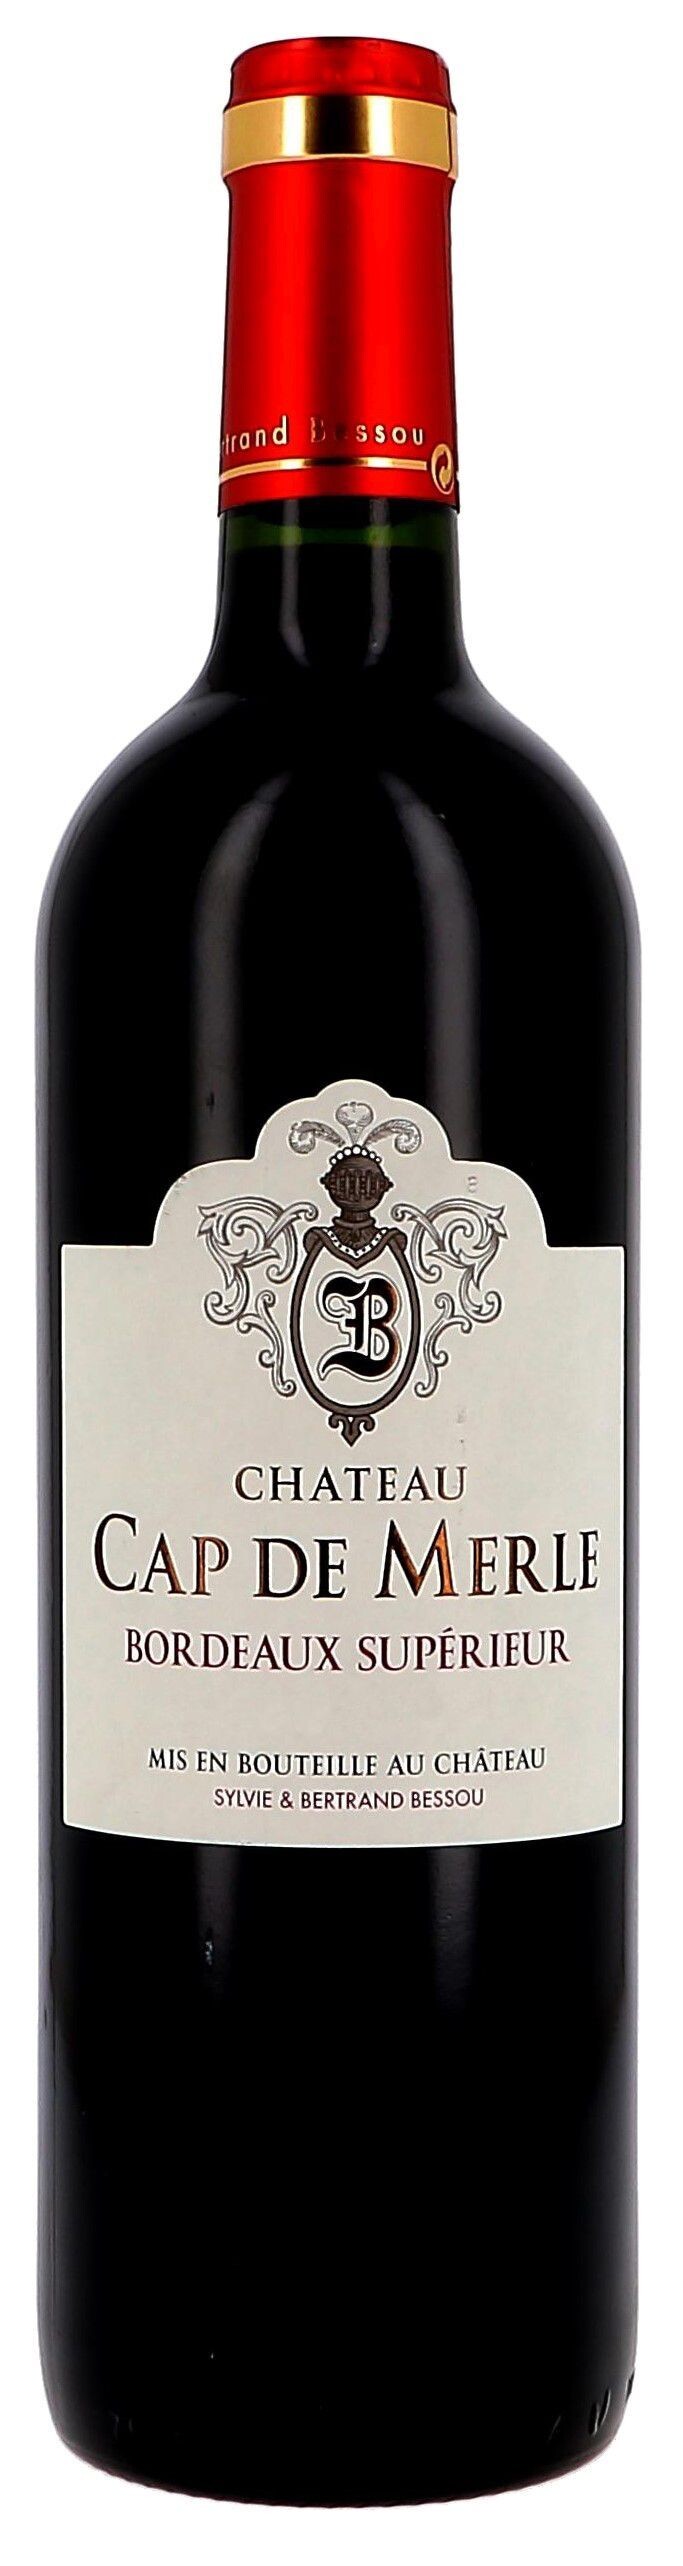 Chateau Cap de Merle 75cl 2016 Bordeaux Superieur (Wijnen)